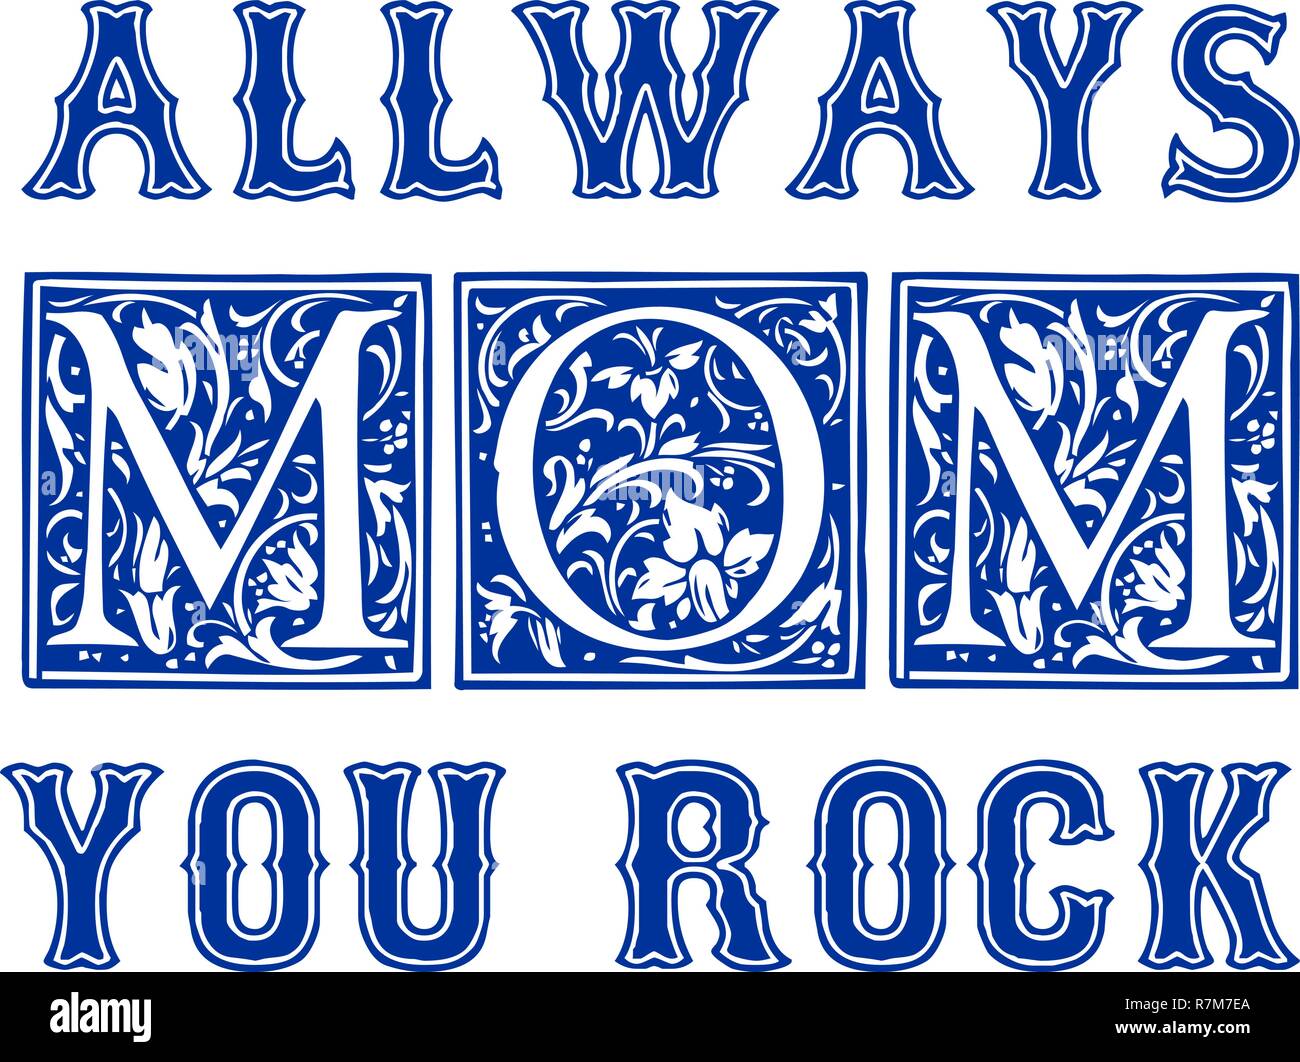 Vous Rock Maman design typographique pour des cartes, affiches, étiquettes, tags, t-shirt print. Illustration de Vecteur